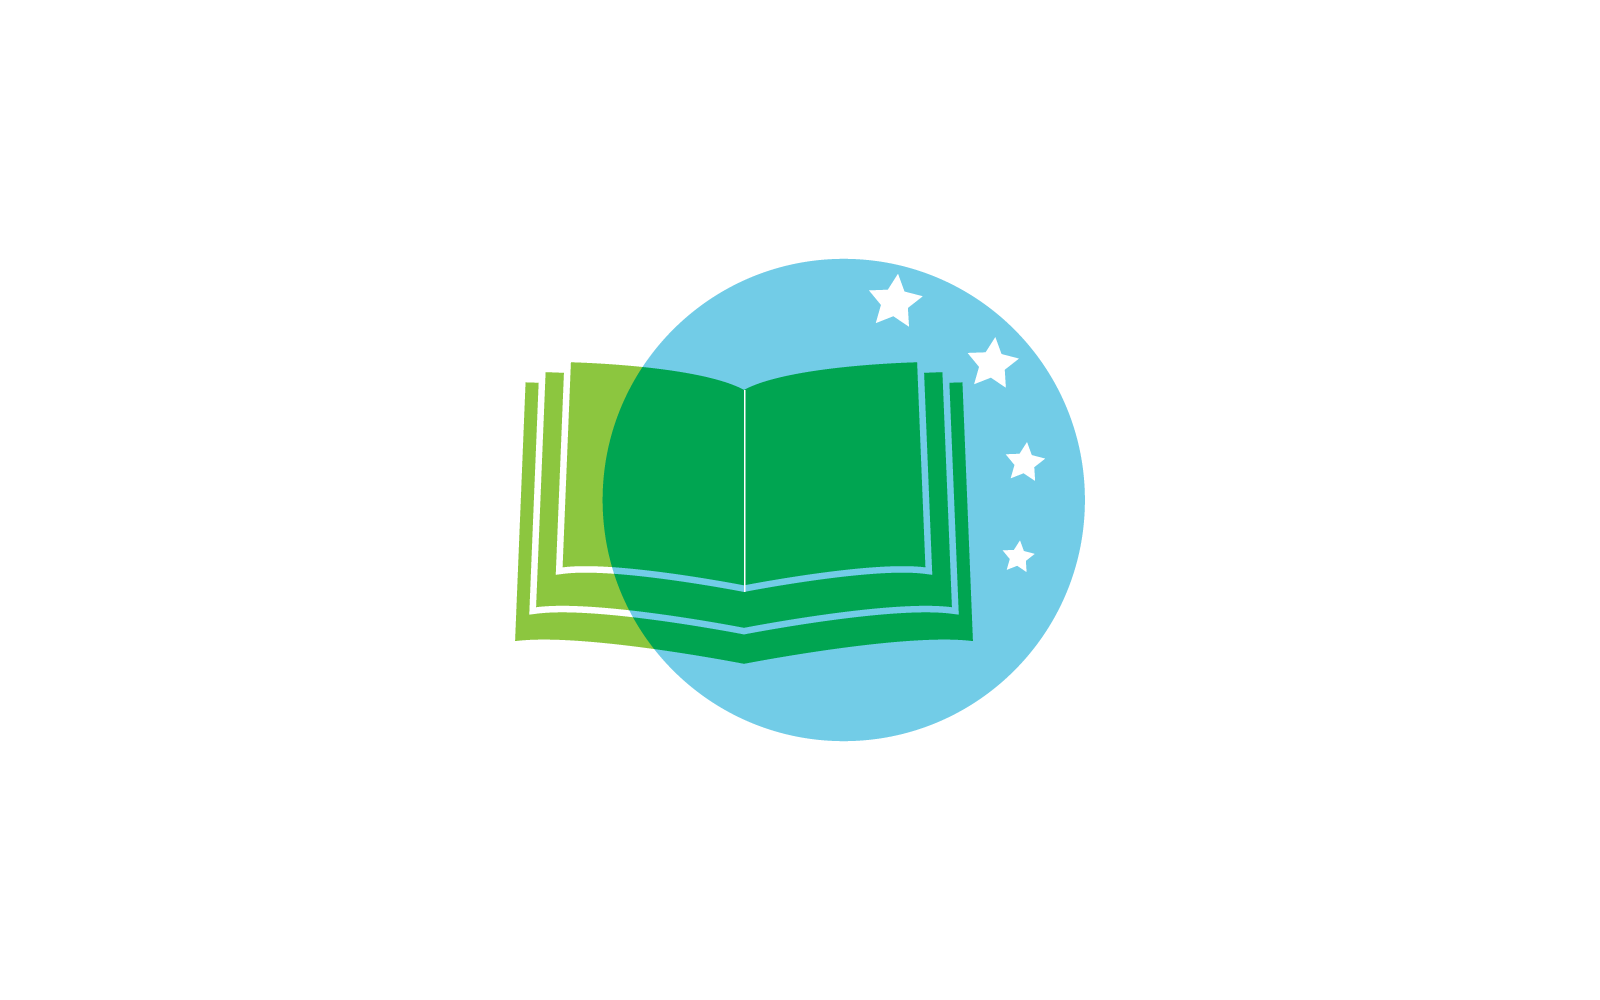 Book education design logo vector template